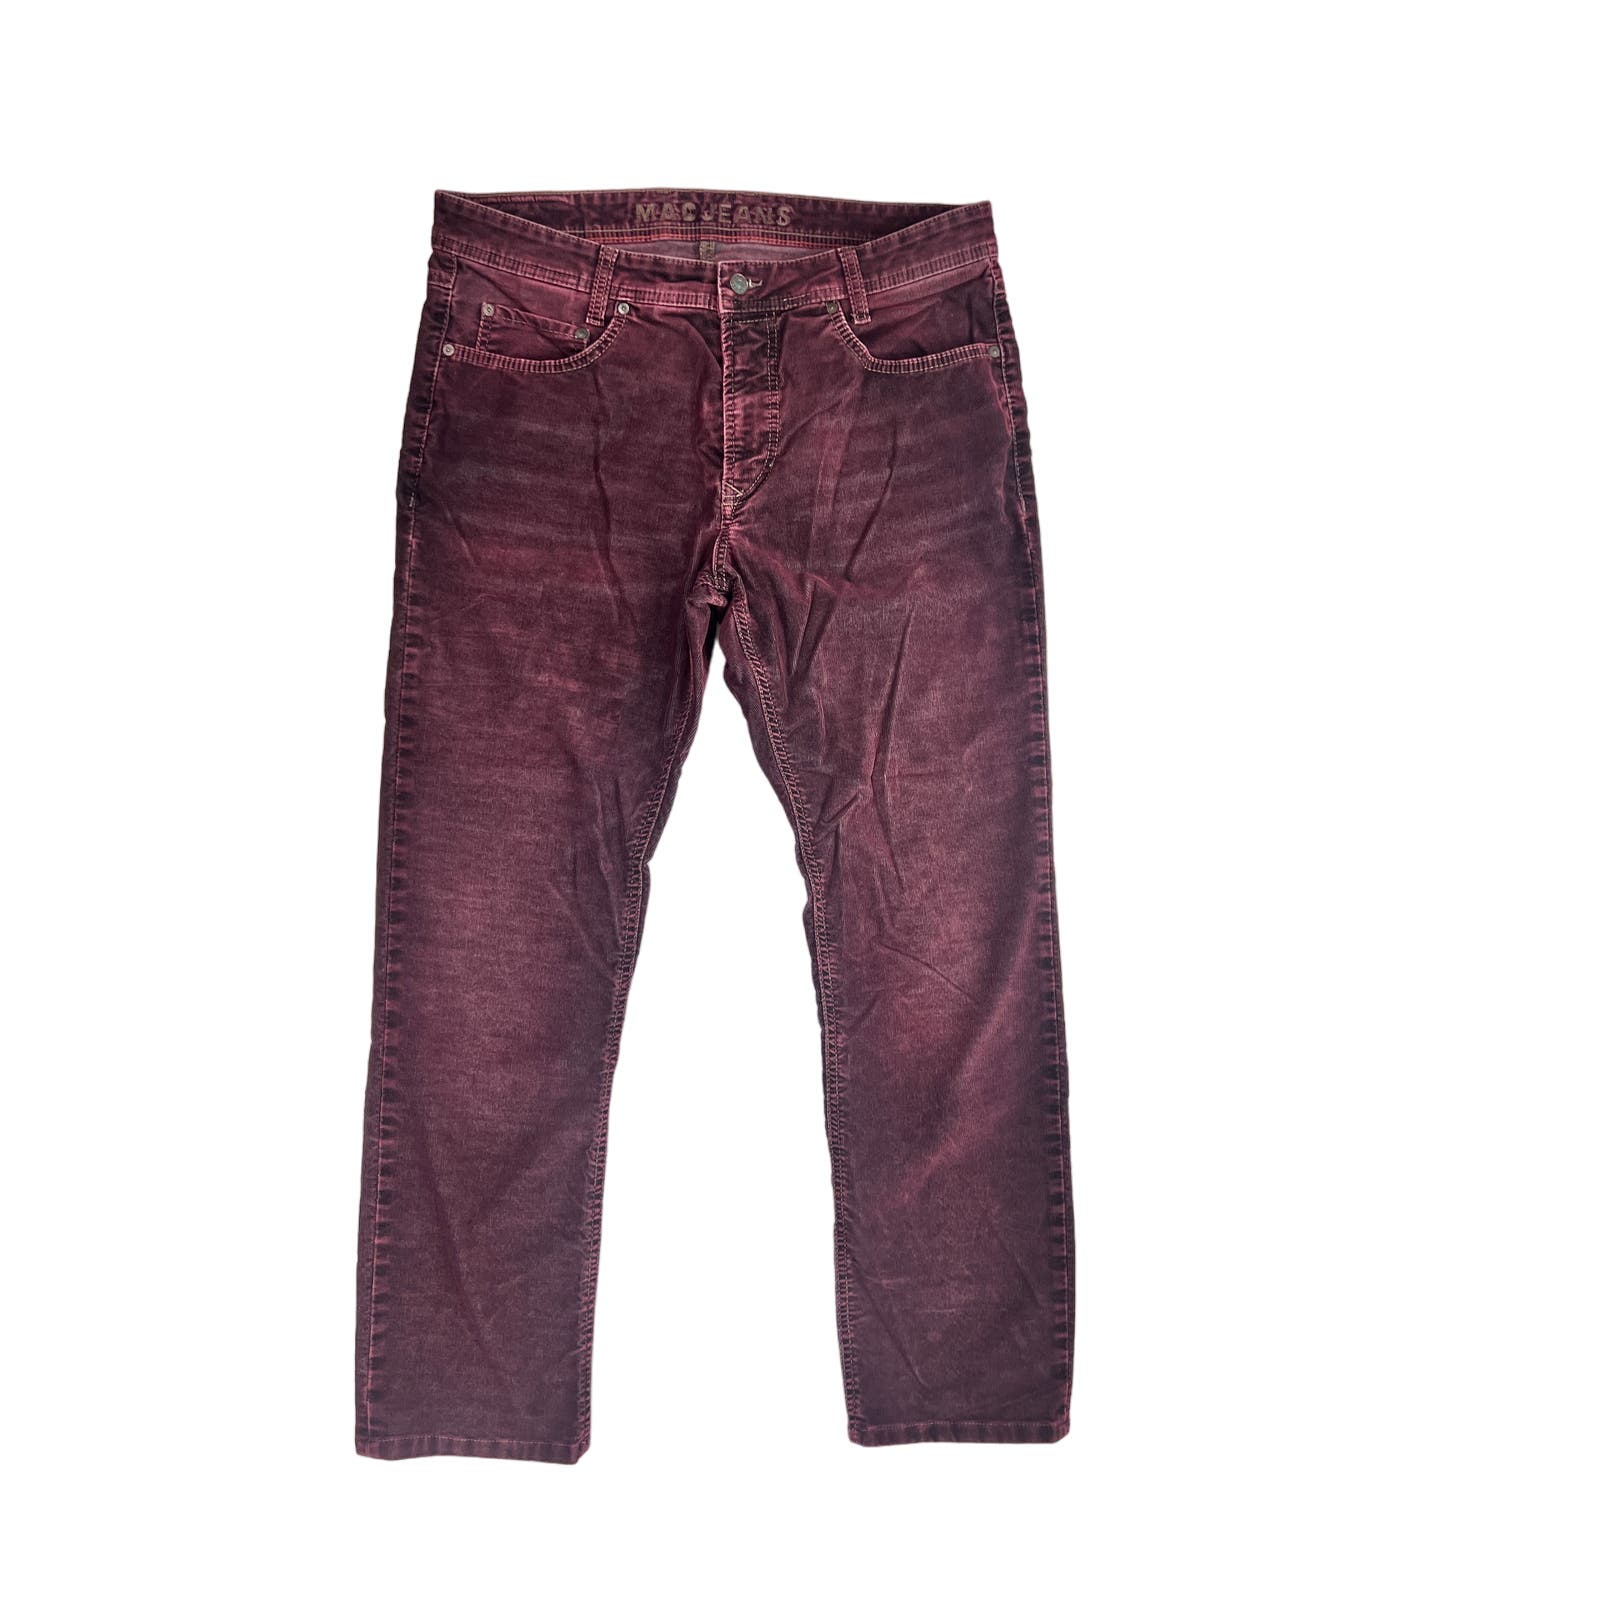 MAC Jeans Arne Pipe Corduroy Pants Mens 35x29 Stretch Maroon Vintage Wash